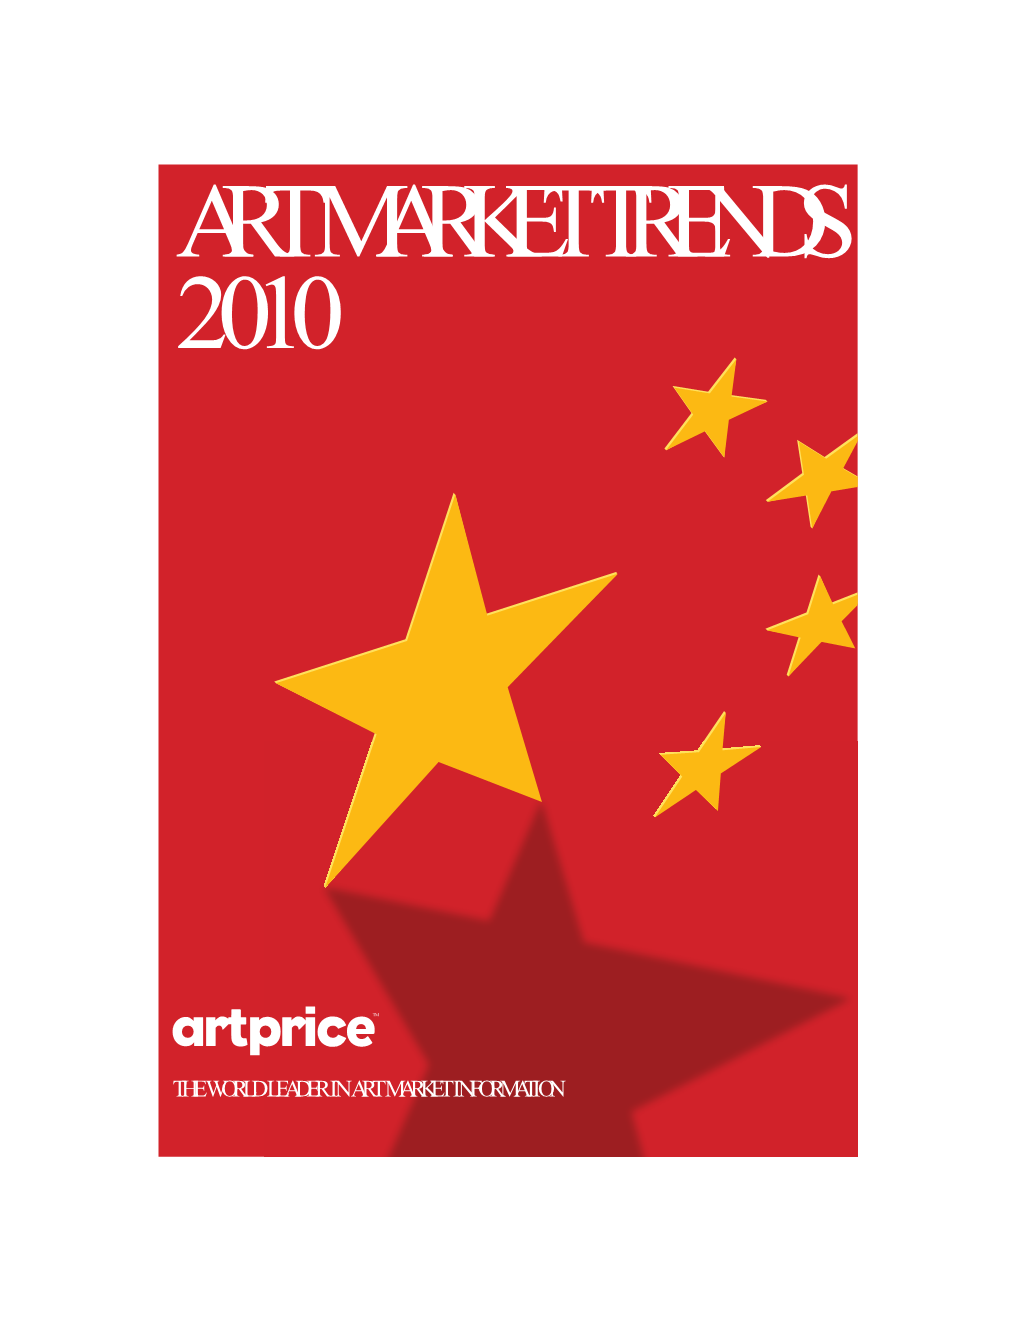 Art Market Trends 2010